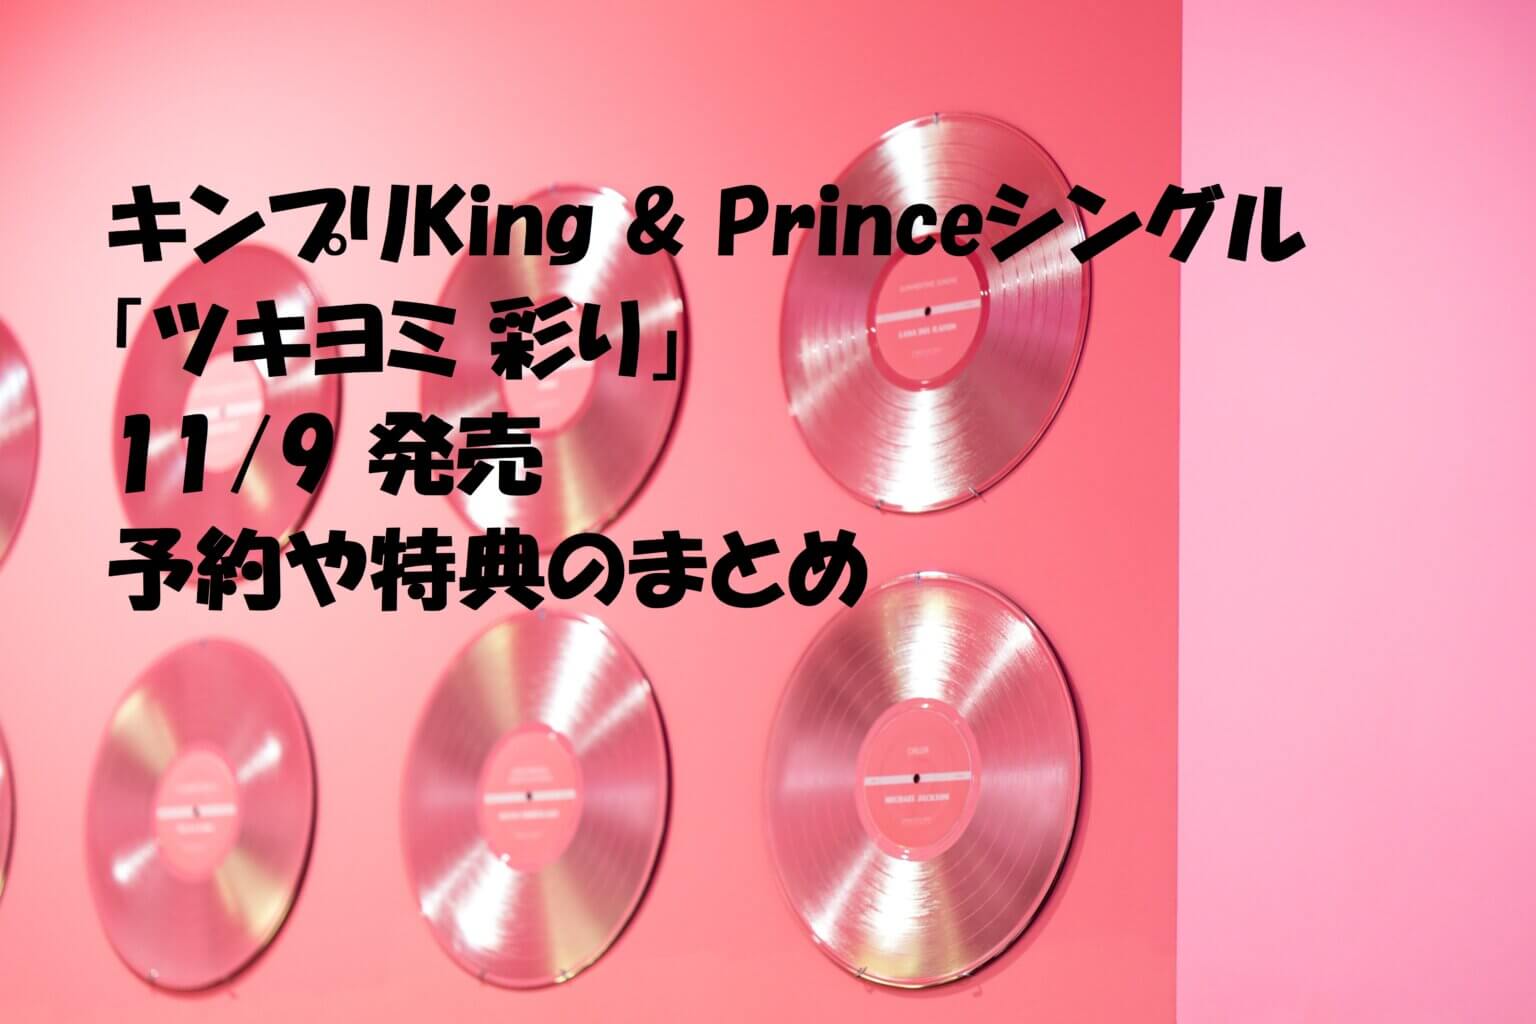 キンプリKing & Princeシングル「ツキヨミ 彩り」11/9 発売 予約や特典 